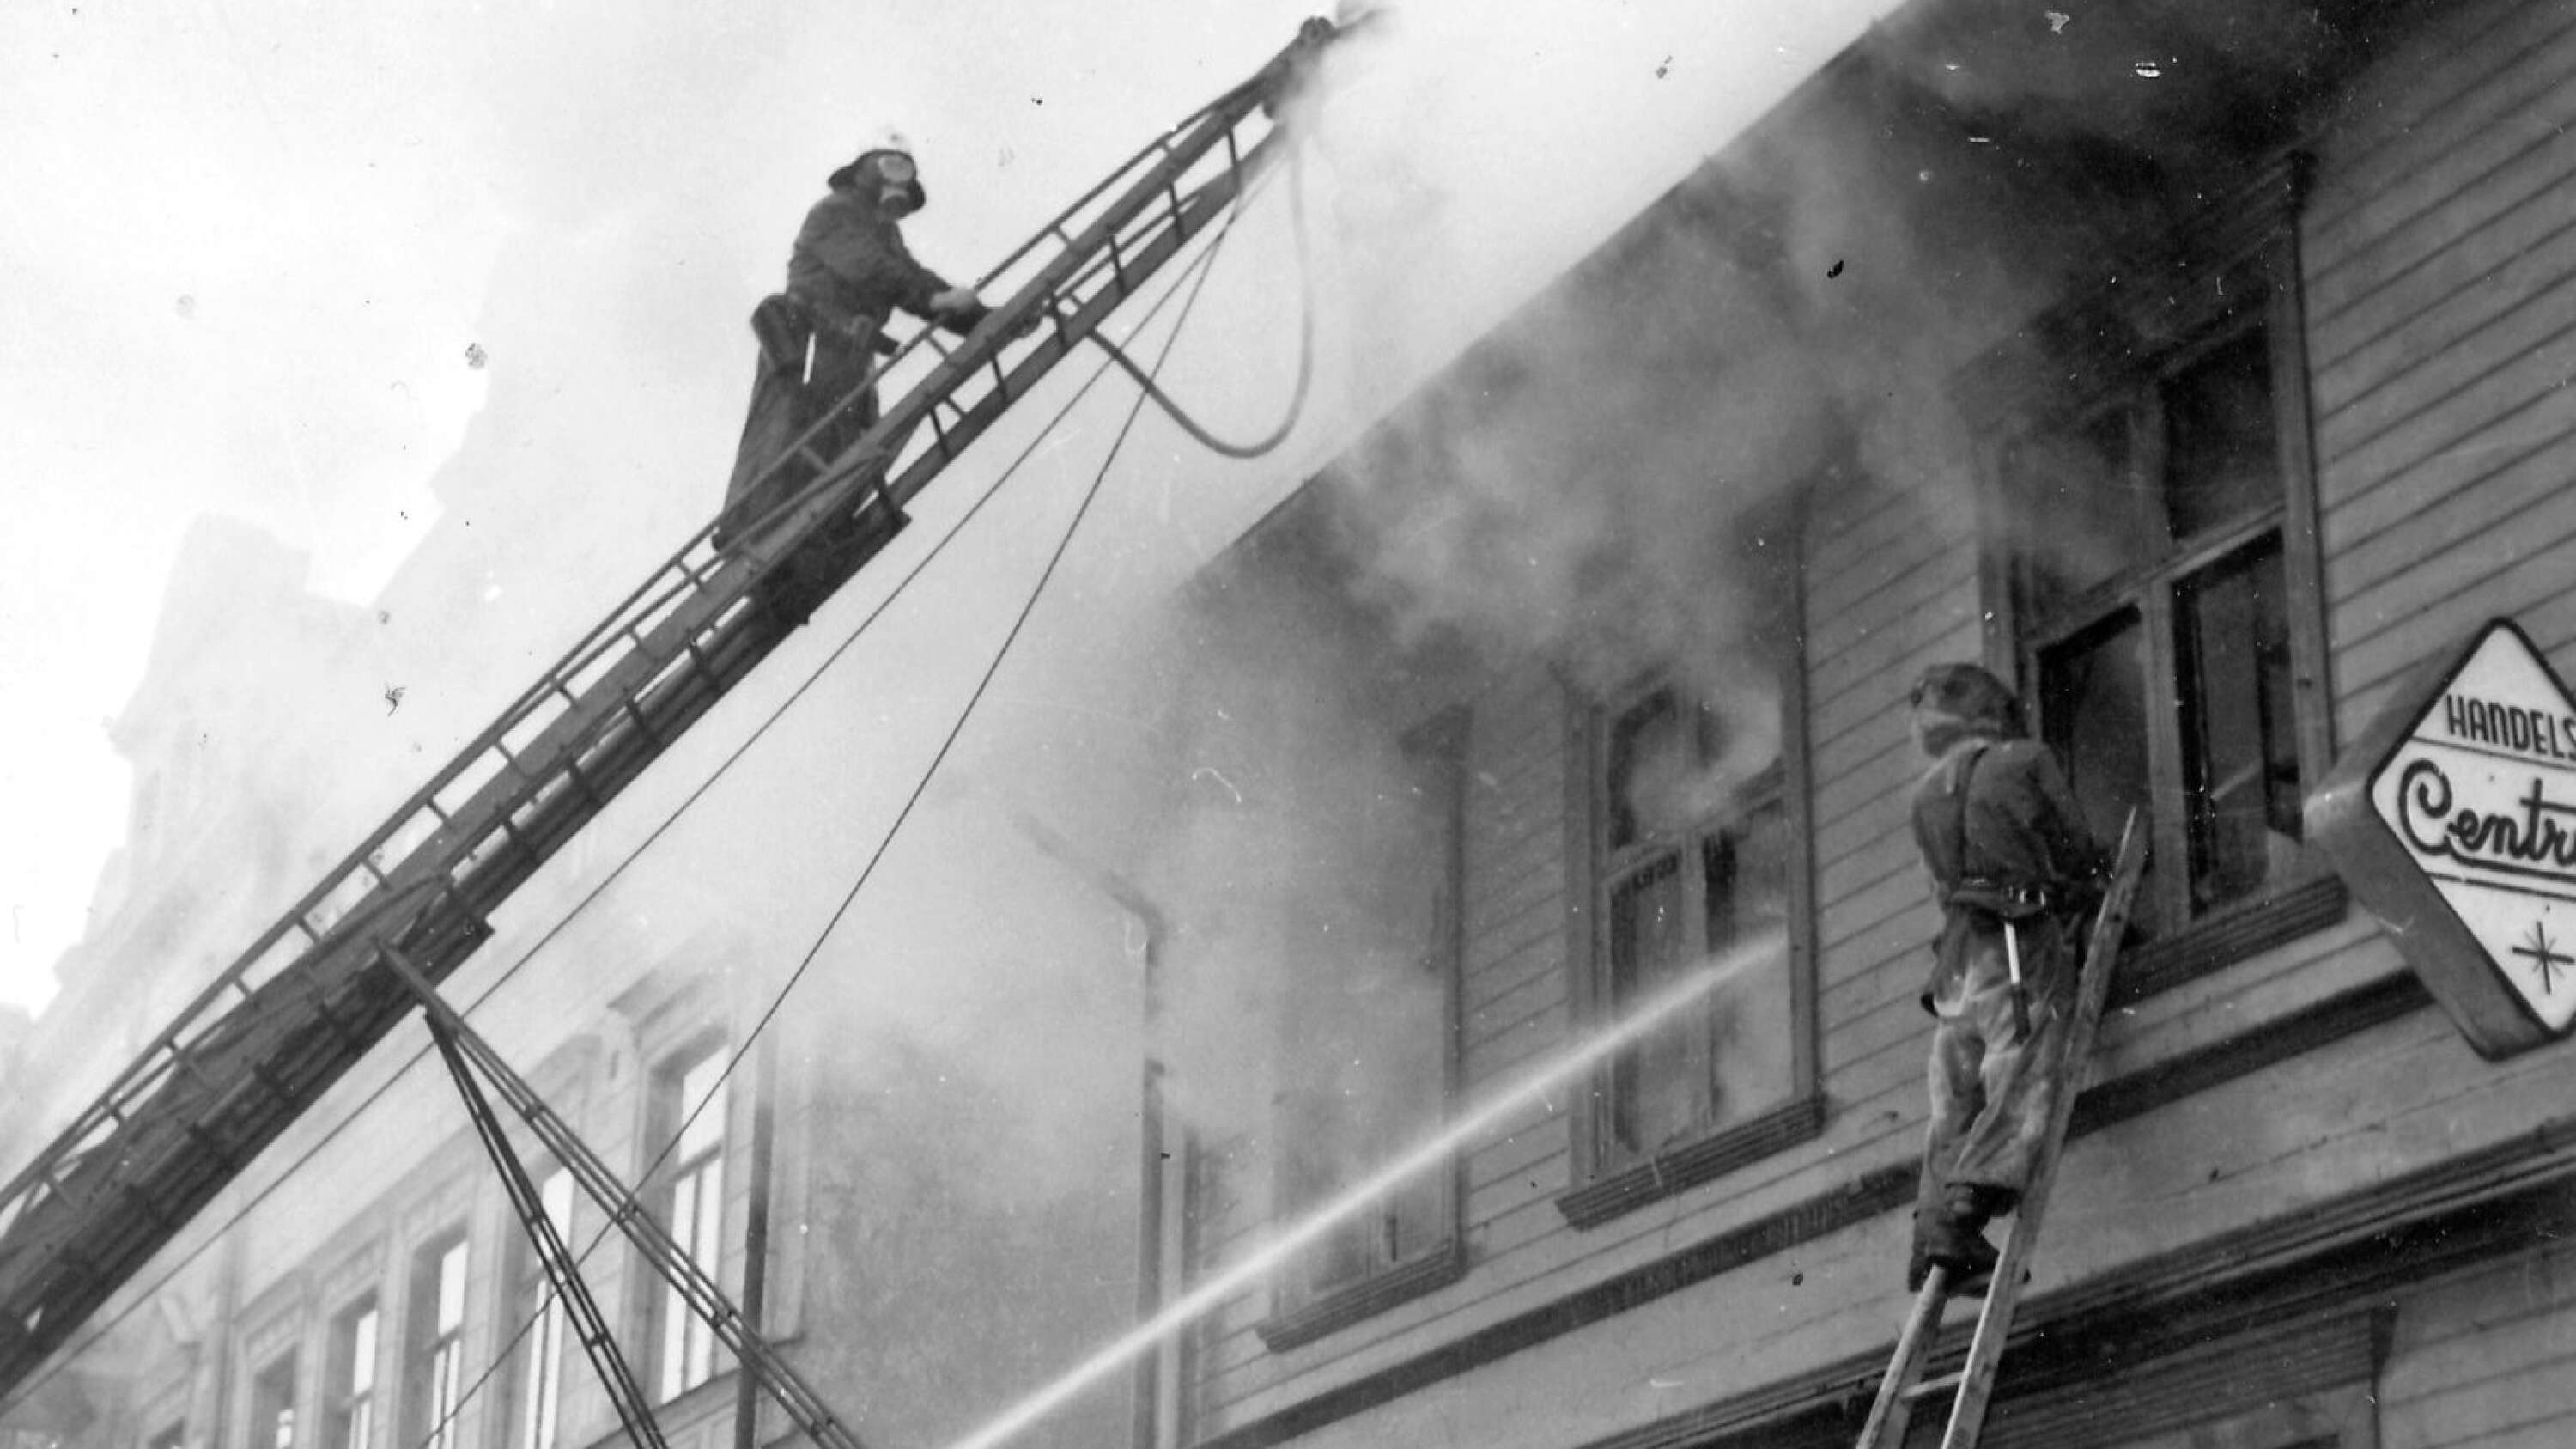 Vid torget låg klädbutiken Handels-Centrum. Marknadsdagen 1961 blev det en brand i huset, som totalförstördes och fick rivas. Det blev en marknadsdag med sot och rök.